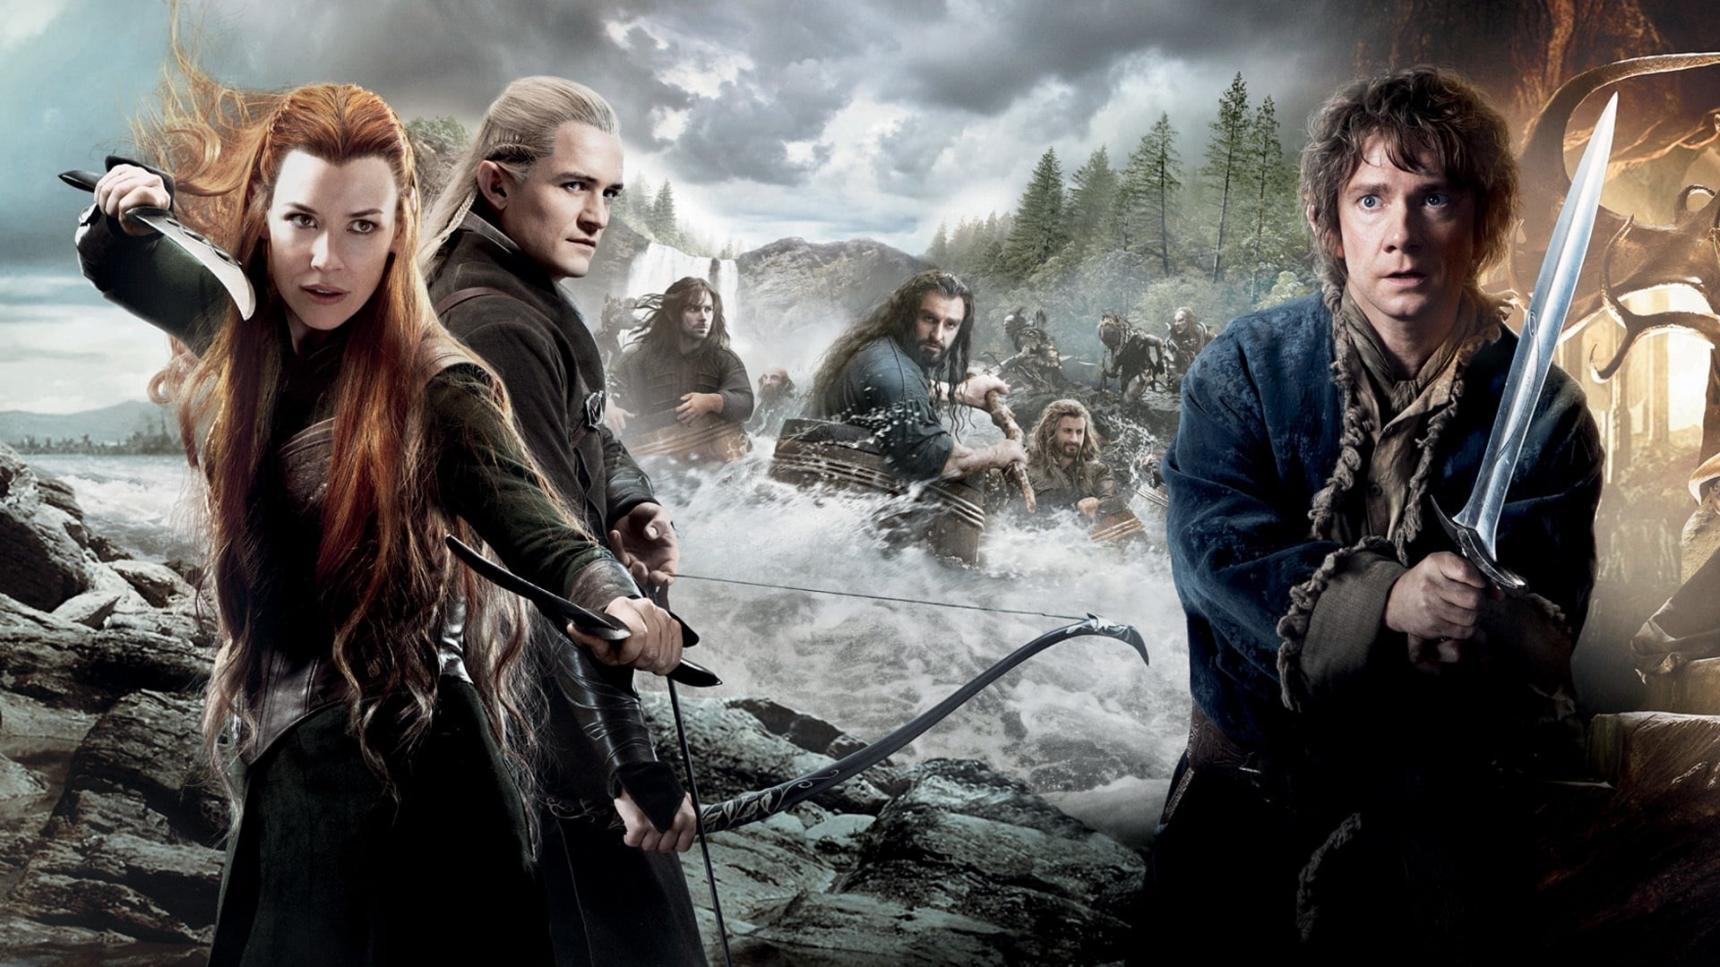 poster de El hobbit: La desolación de Smaug